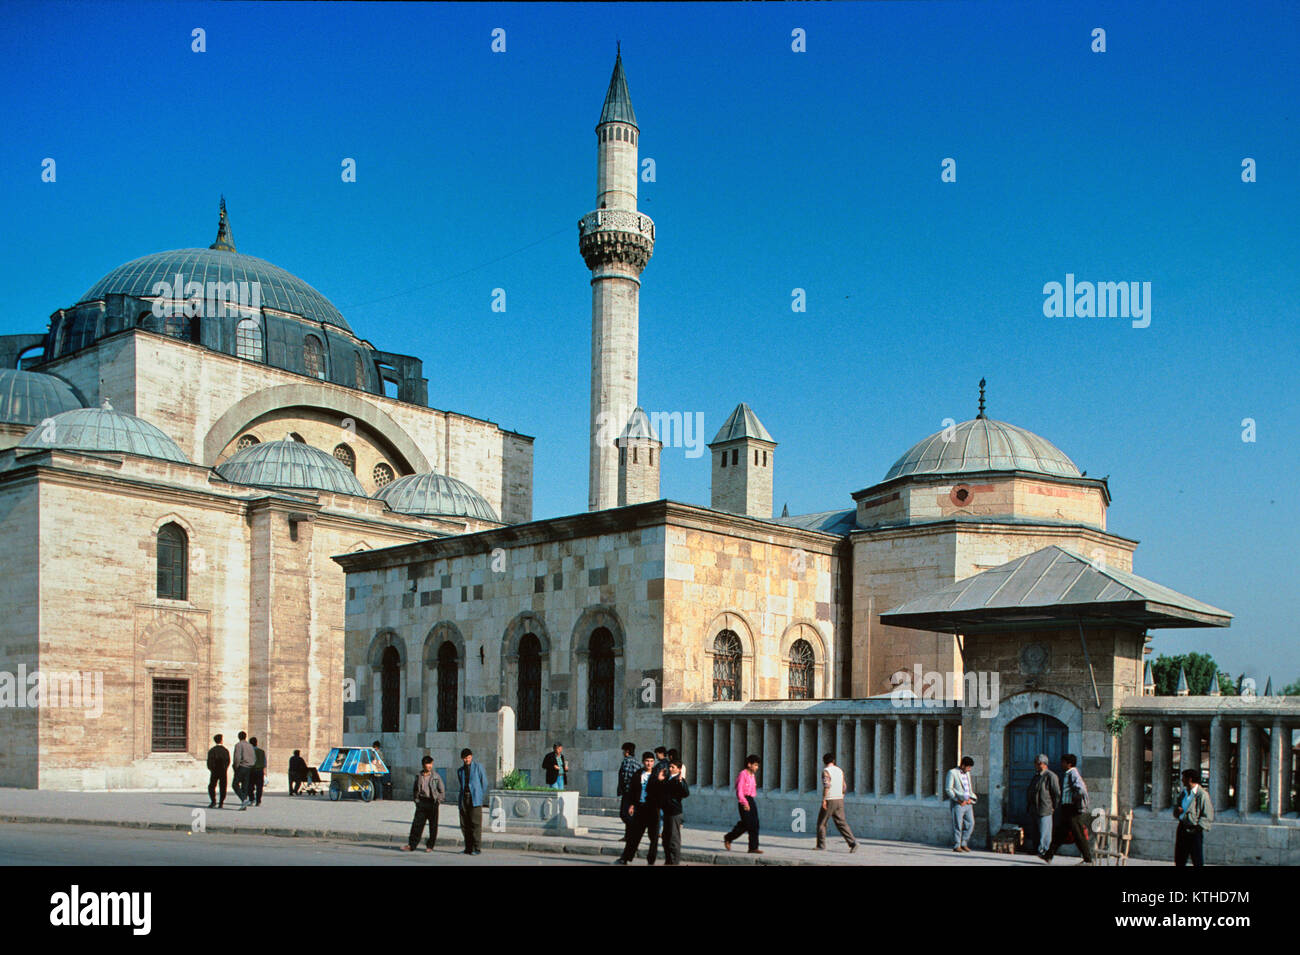 Mosquée Selimiye , ou Selim II mosquée, une mosquée de style ottoman classique (1558-1570) possible conçu par Mimar Sinan, Konya, Turquie Banque D'Images